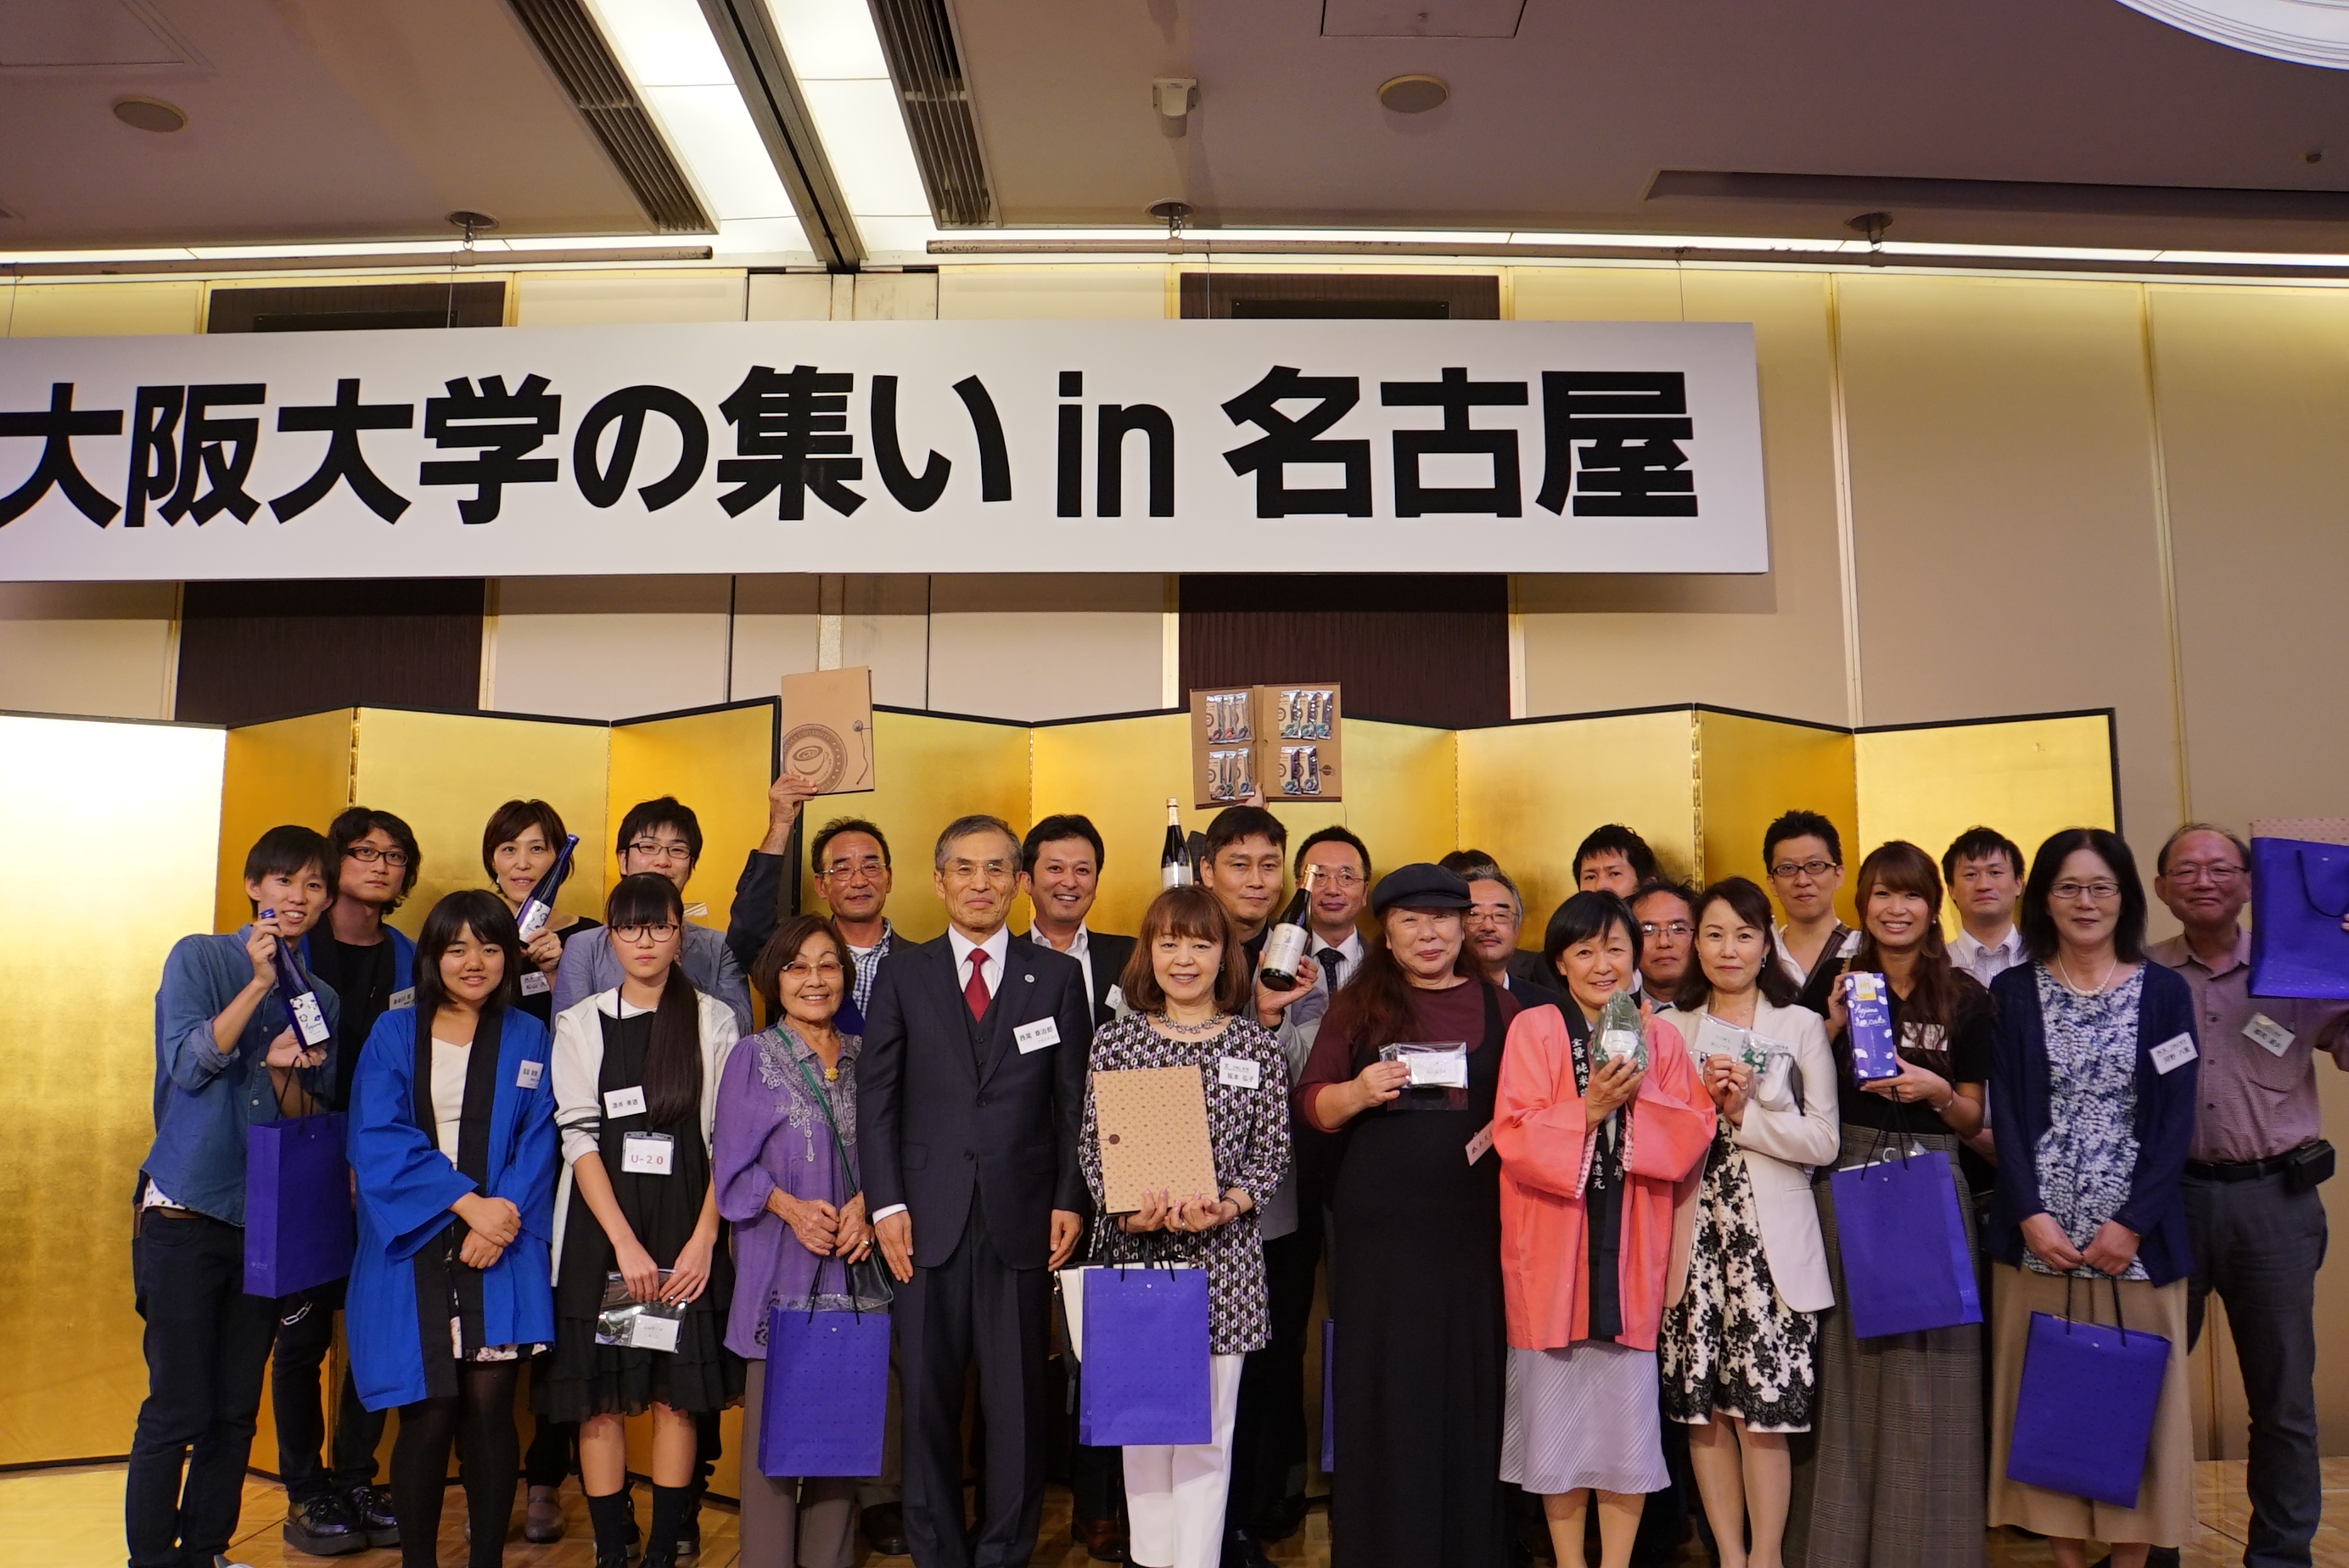 「大阪大学の集いin名古屋」を開催、300名が参加